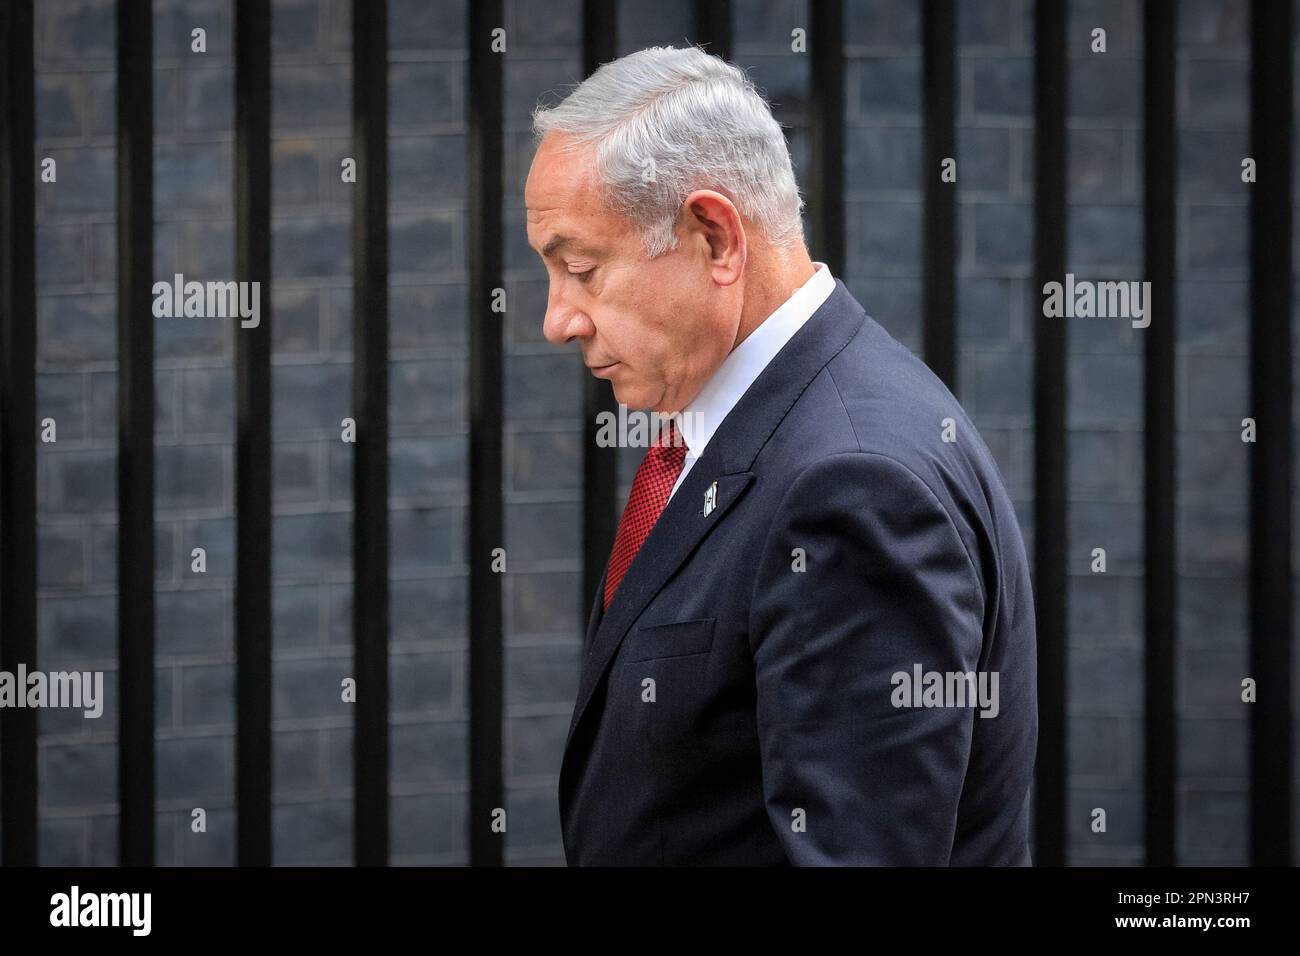 Benjamin Netanyahou, Premier ministre d'Israël, marche « derrière les bars » à Downing Street, Londres, Royaume-Uni Banque D'Images